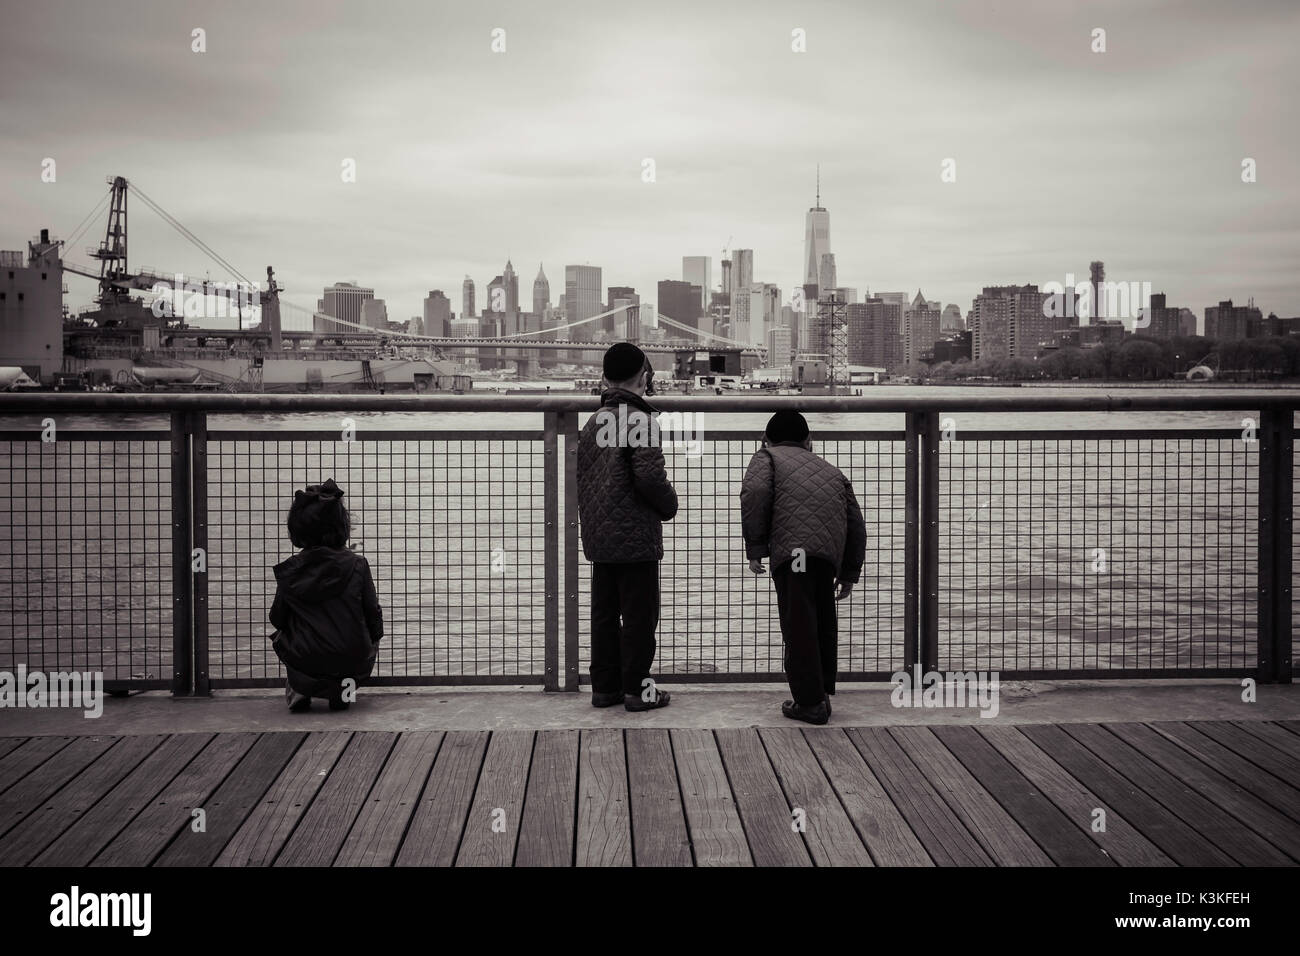 Junge orthodoxe Juden, Kinder vor der Skyline von New York, Williamsburg, Brooklyn, New York, USA Stockfoto